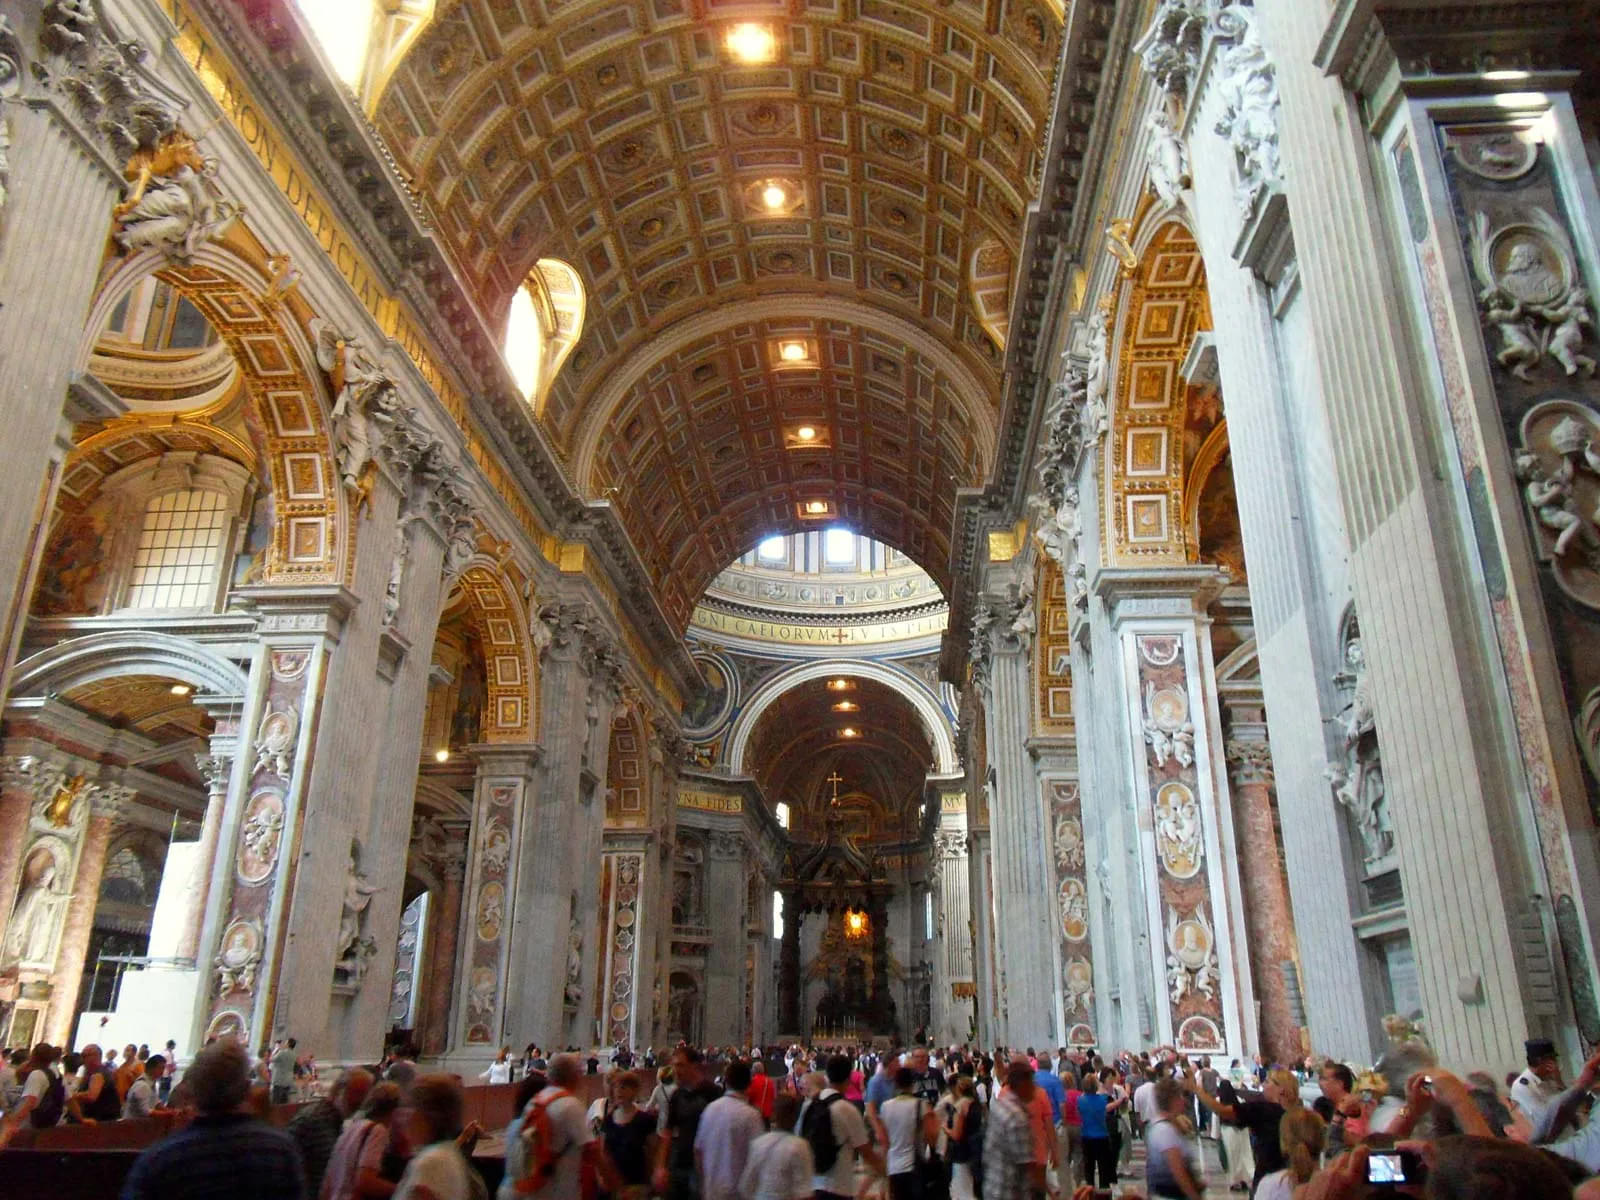 Symbolism of the Basilica